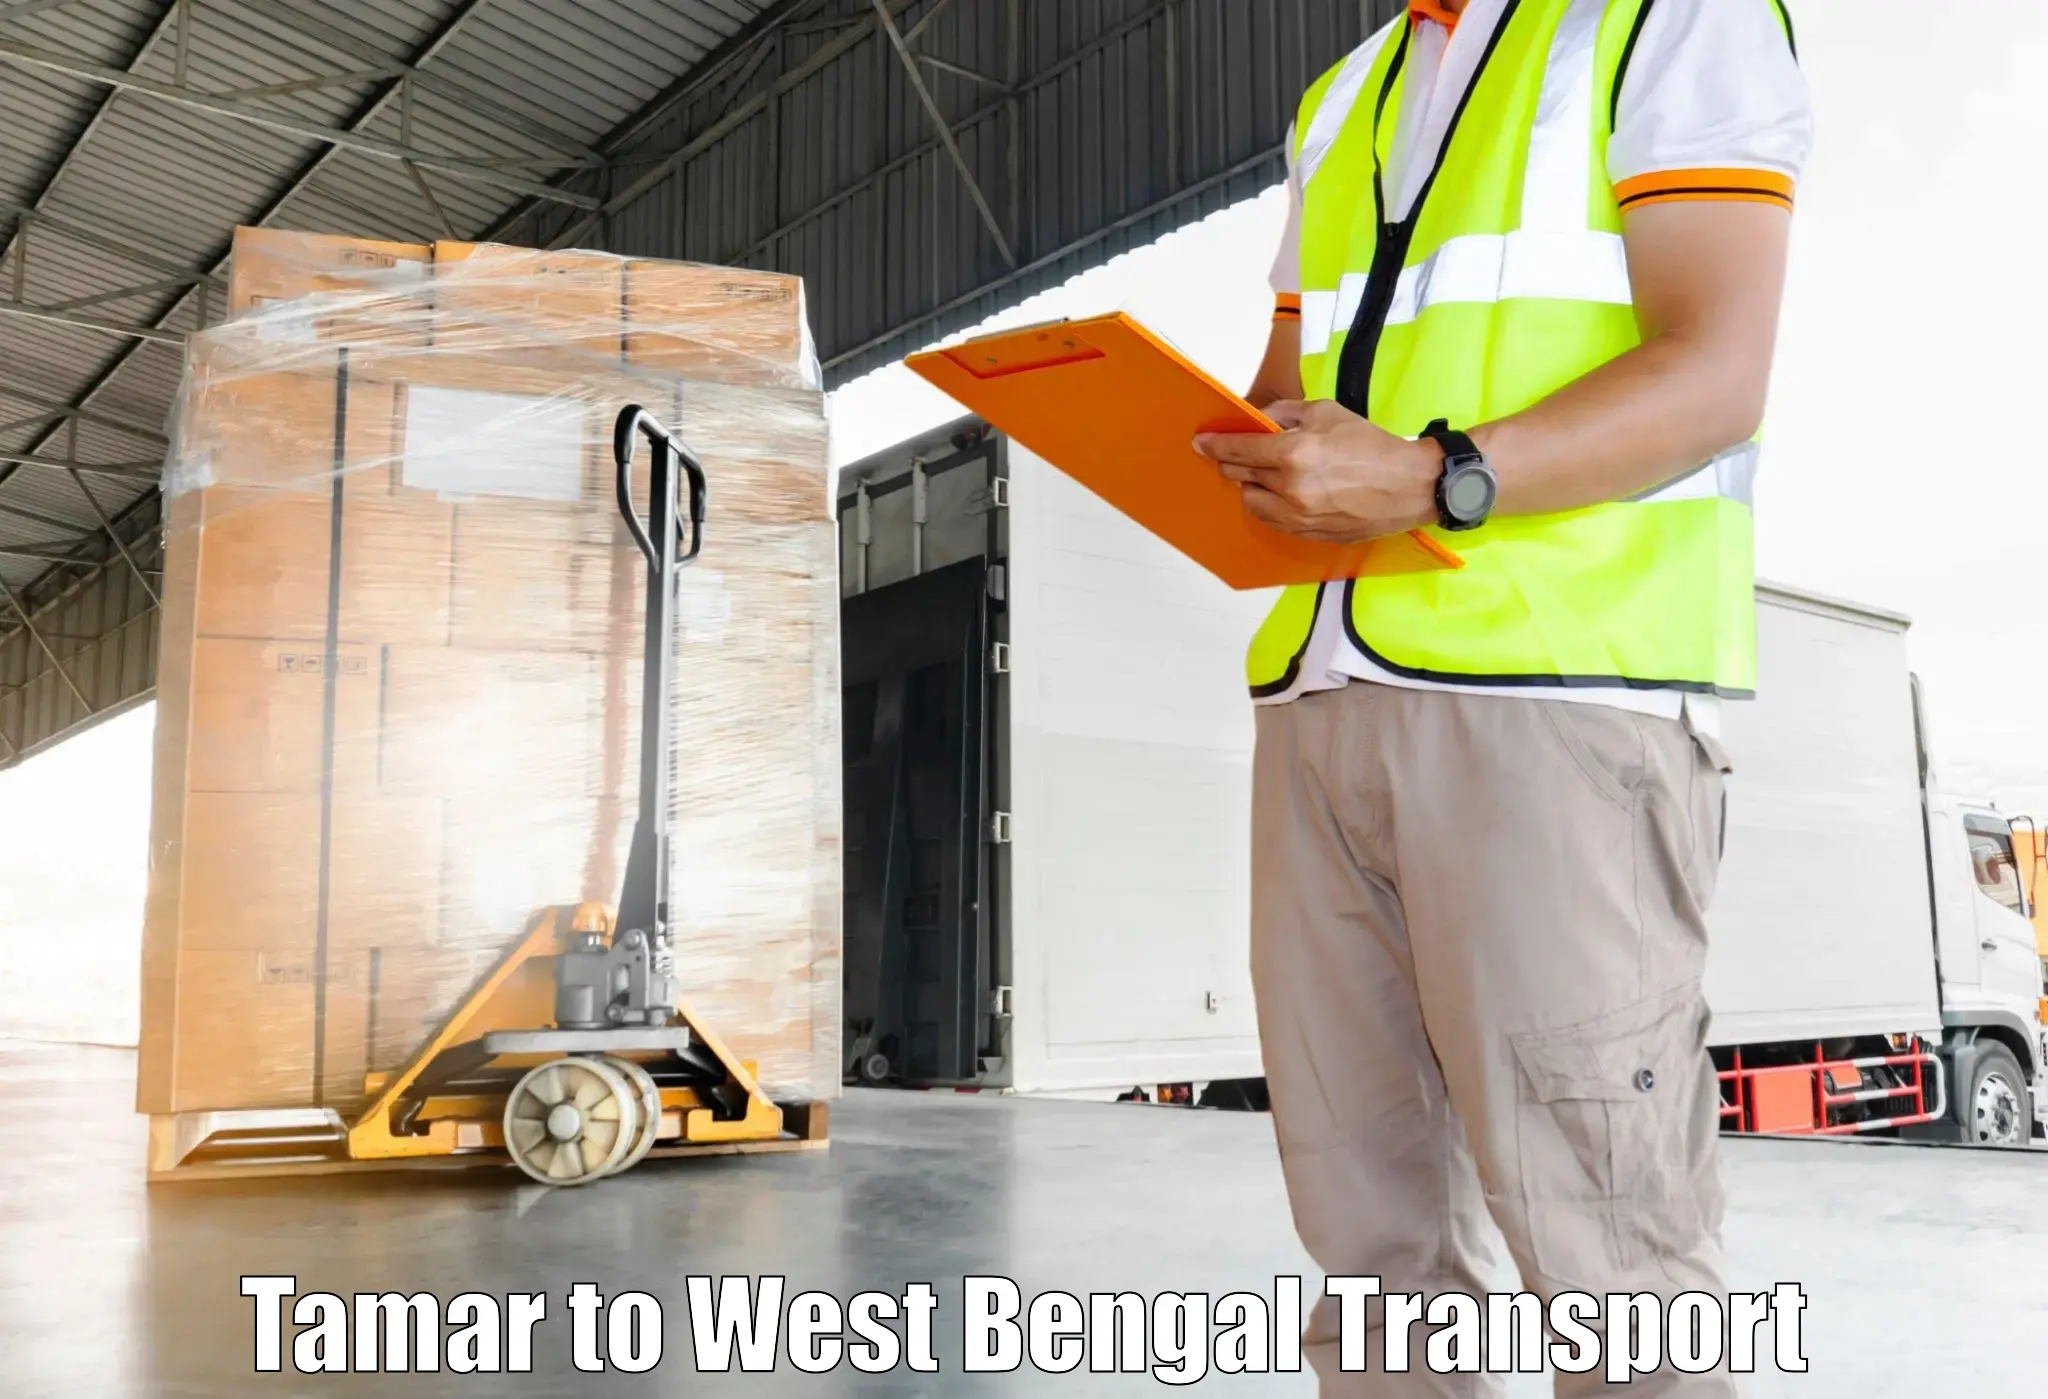 Commercial transport service Tamar to Bandel